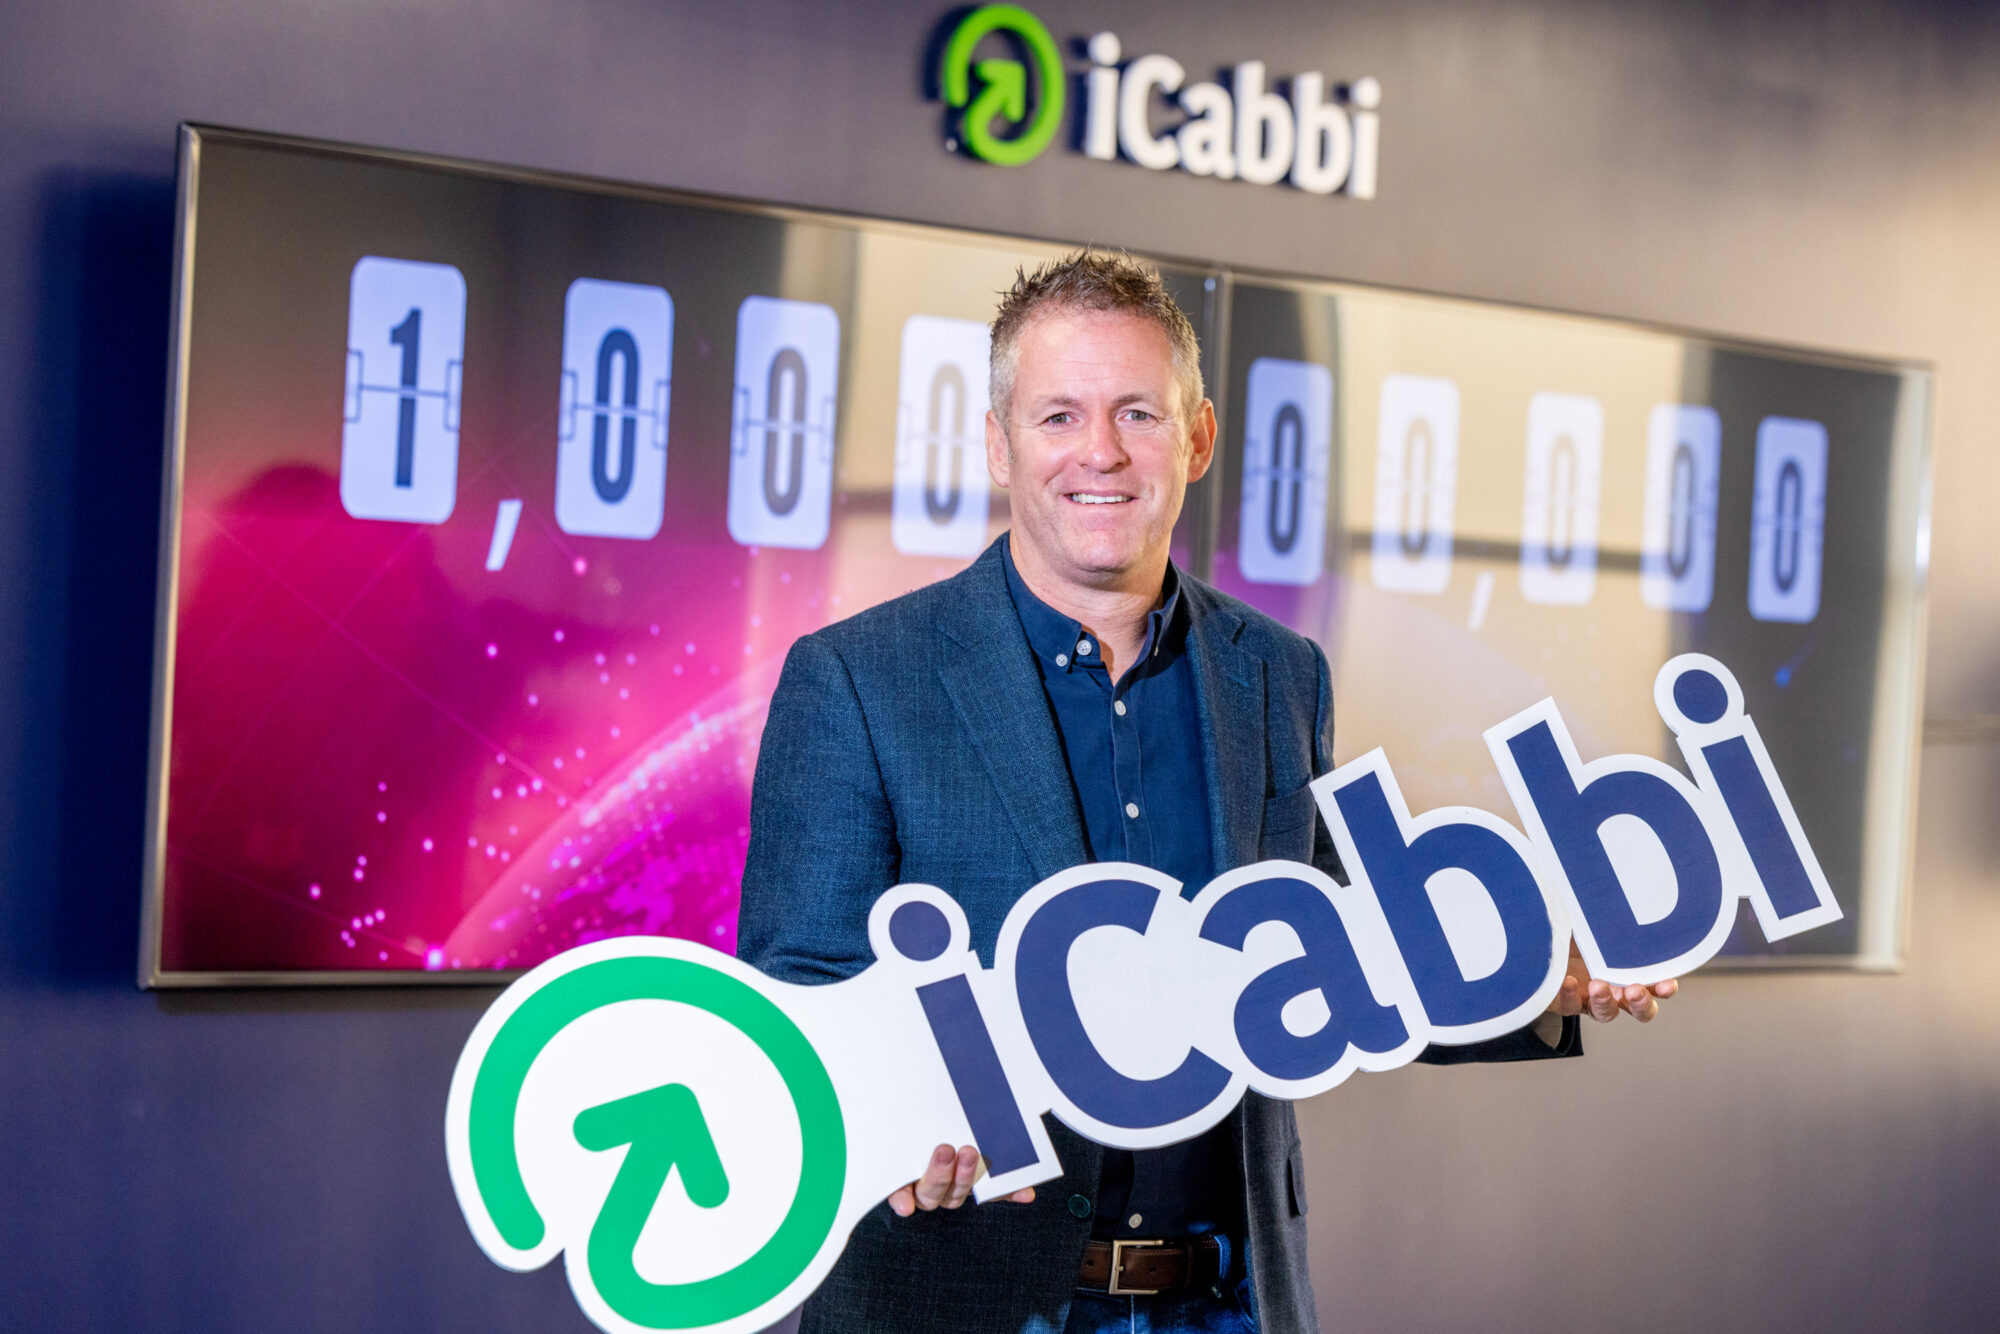 Mobilize iCabbi